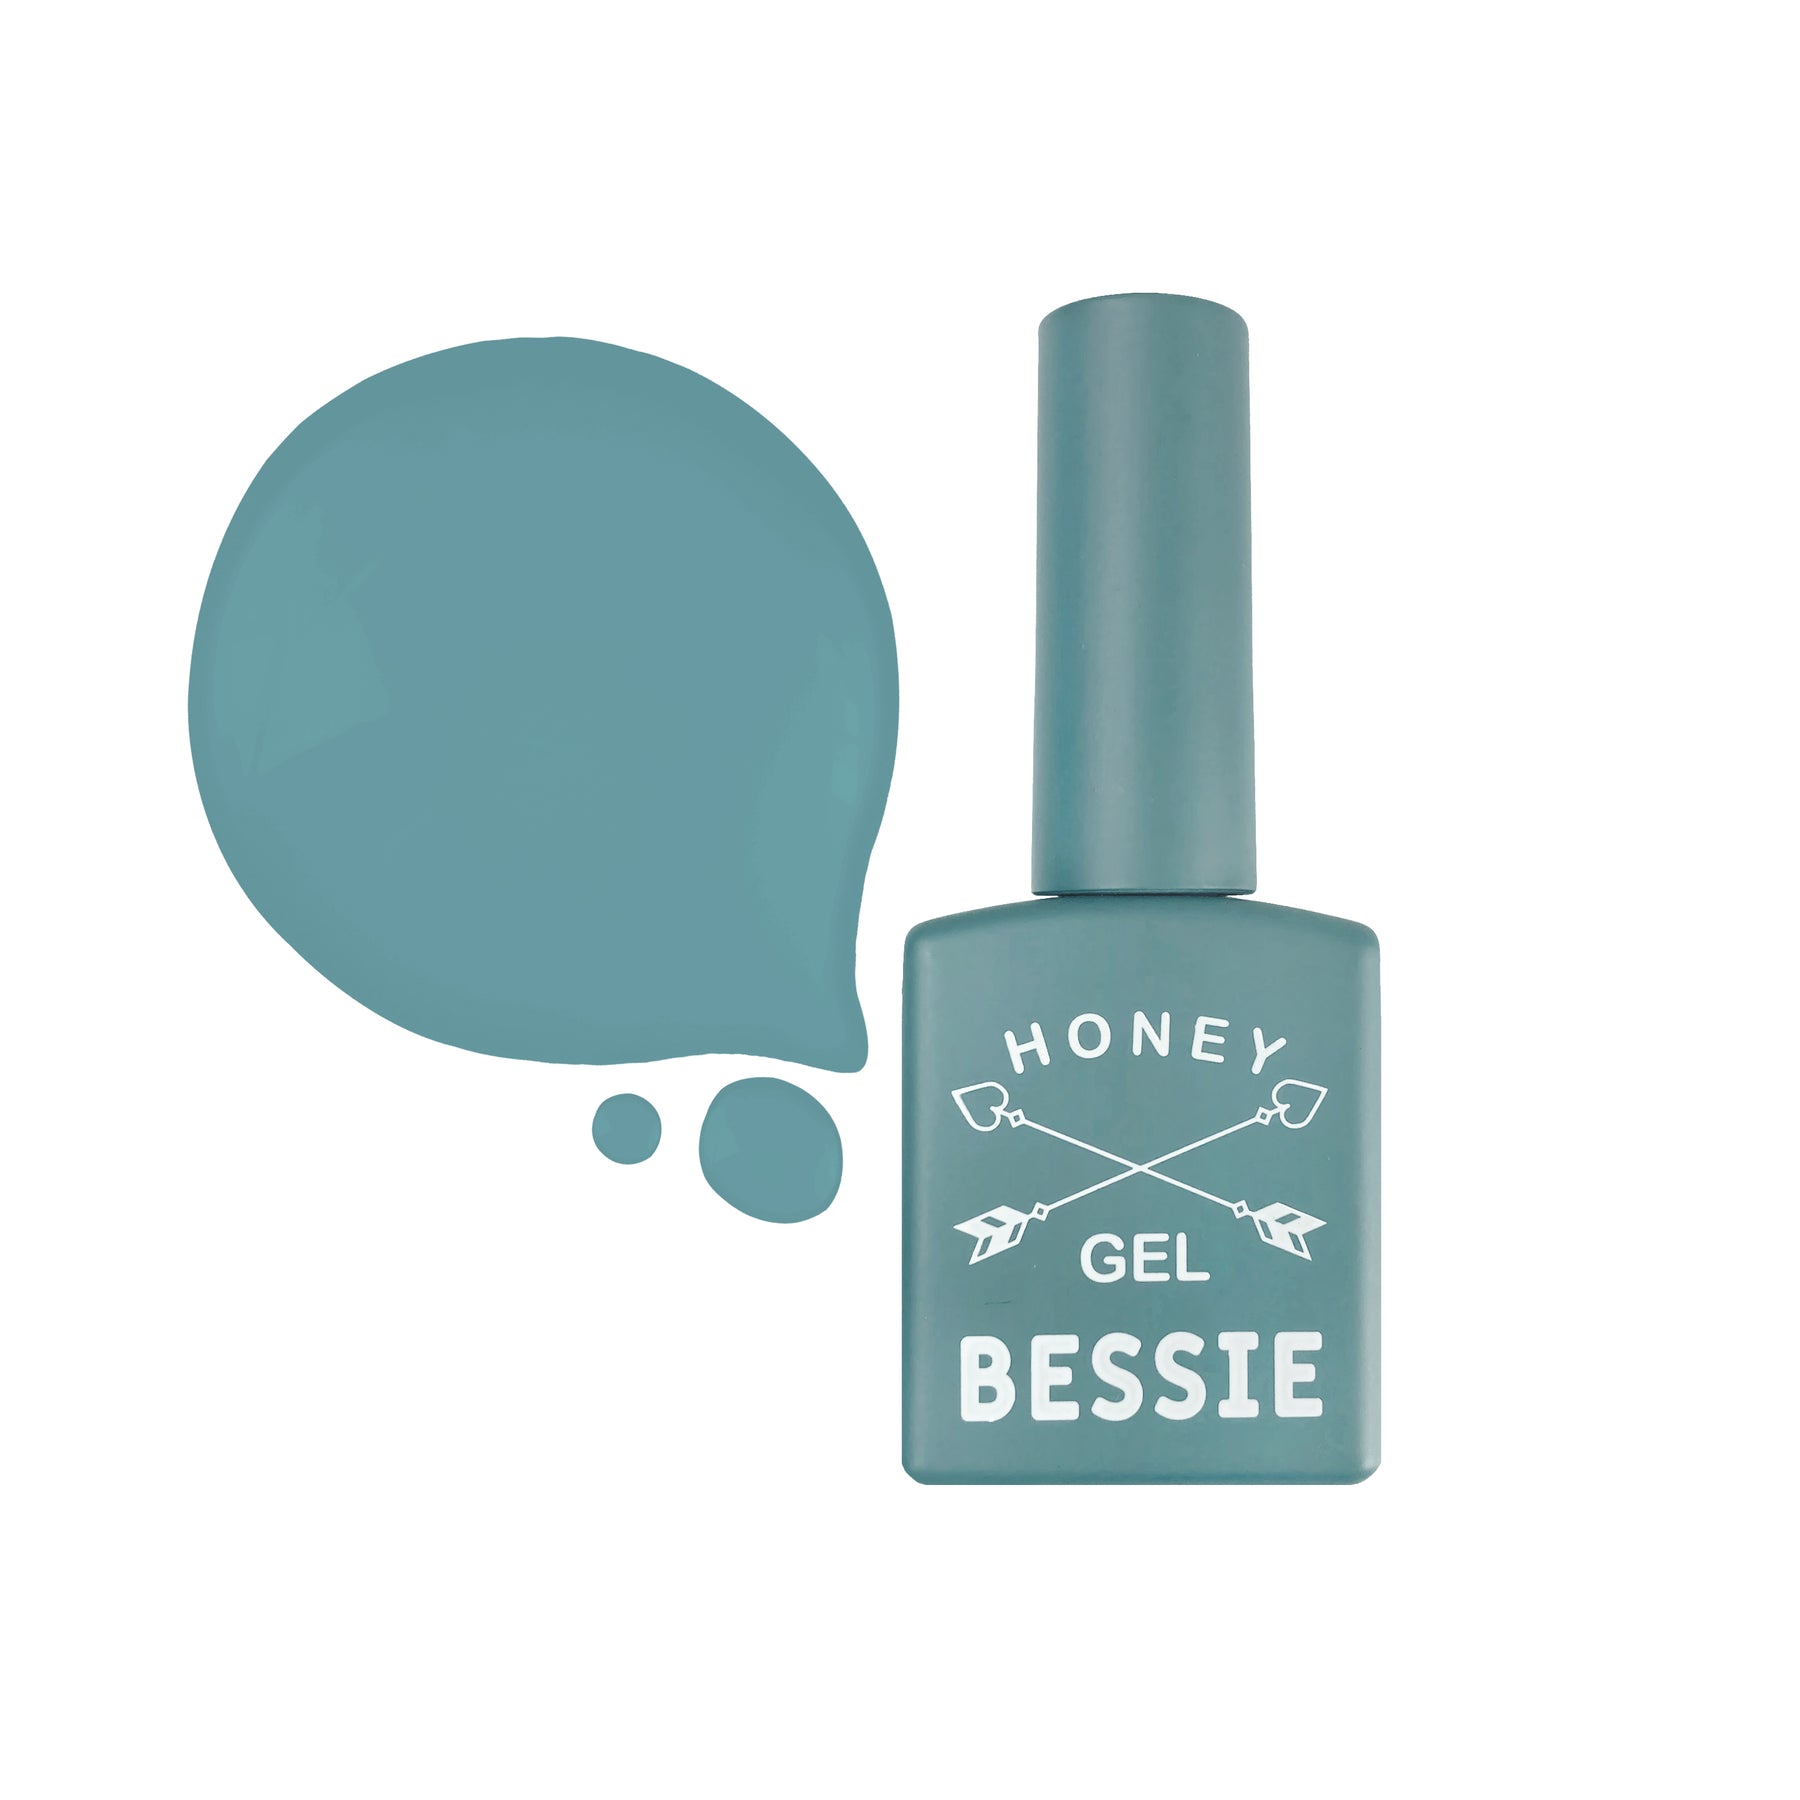 Colección Bessie Honey Gel - Juego de 8 piezas / 1 pieza